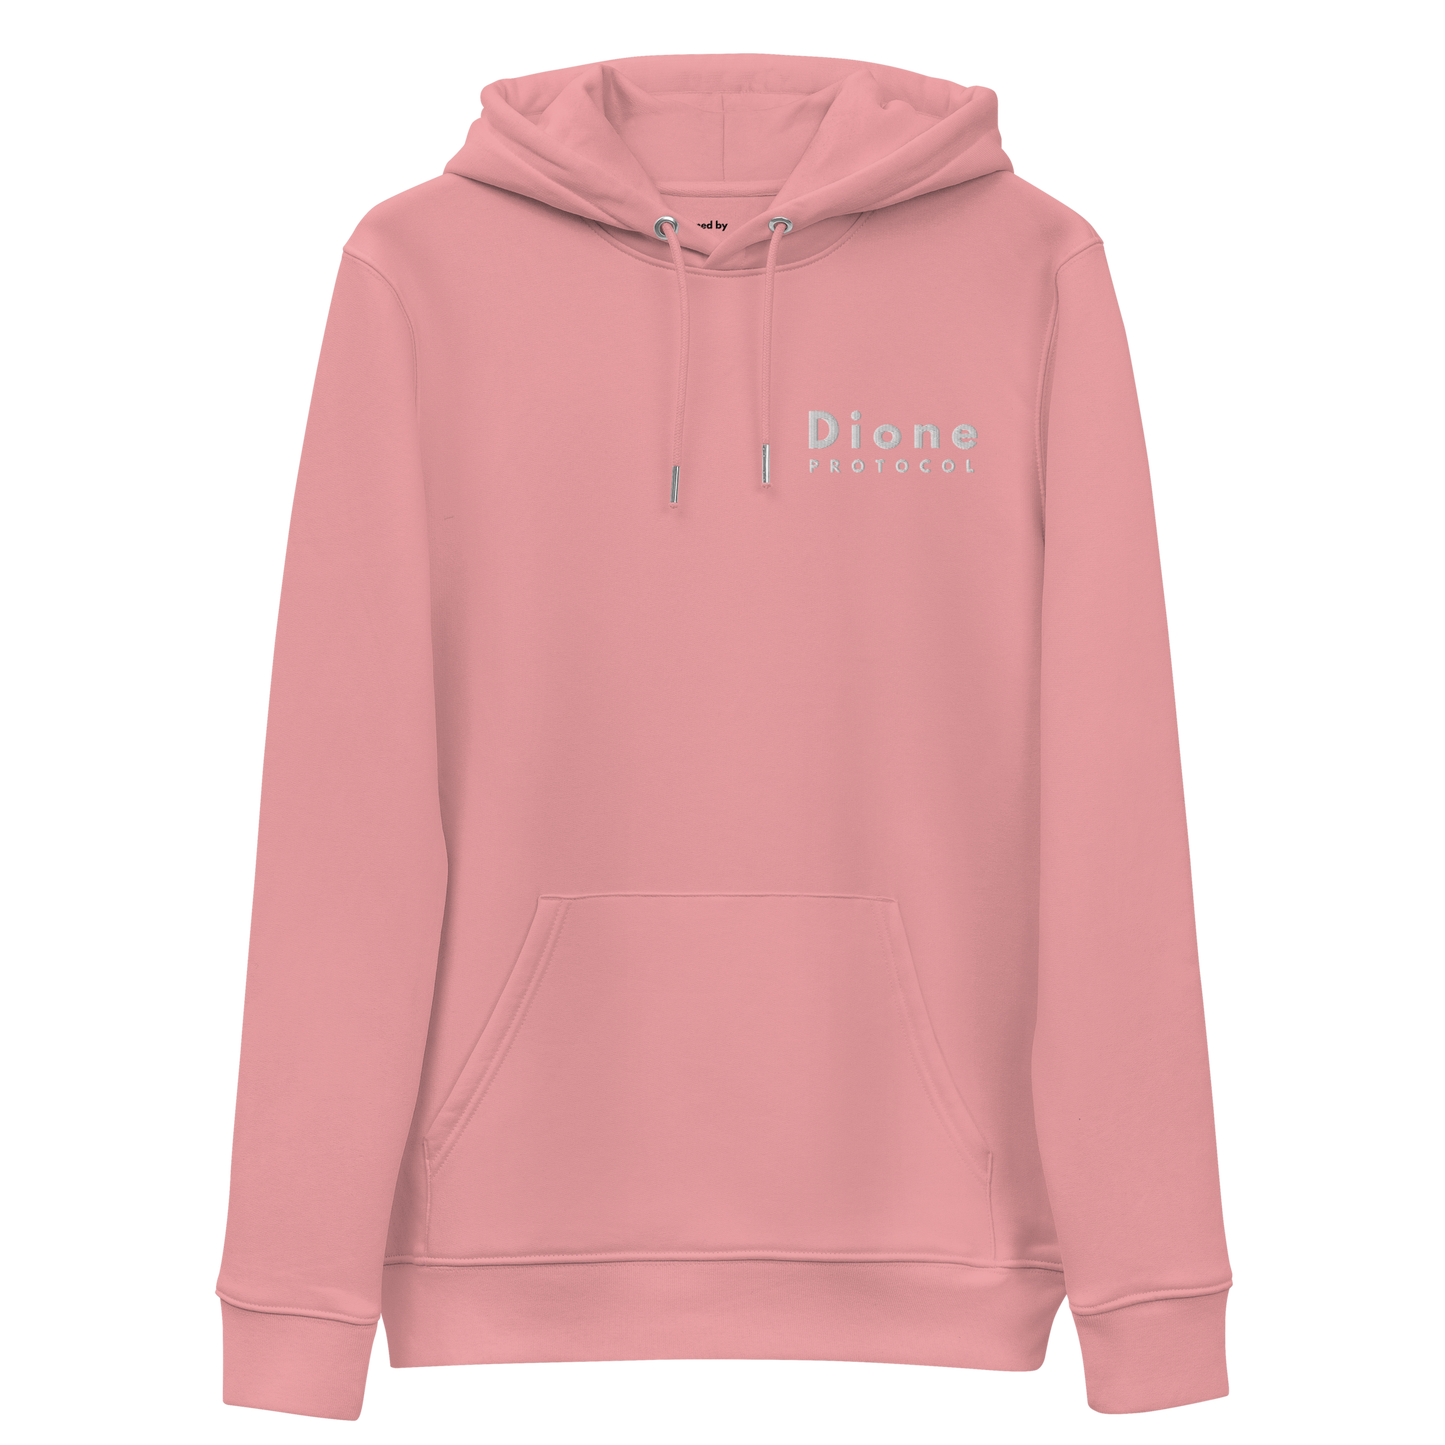 Hoodie - Dione V1.0 - Pink - Premium